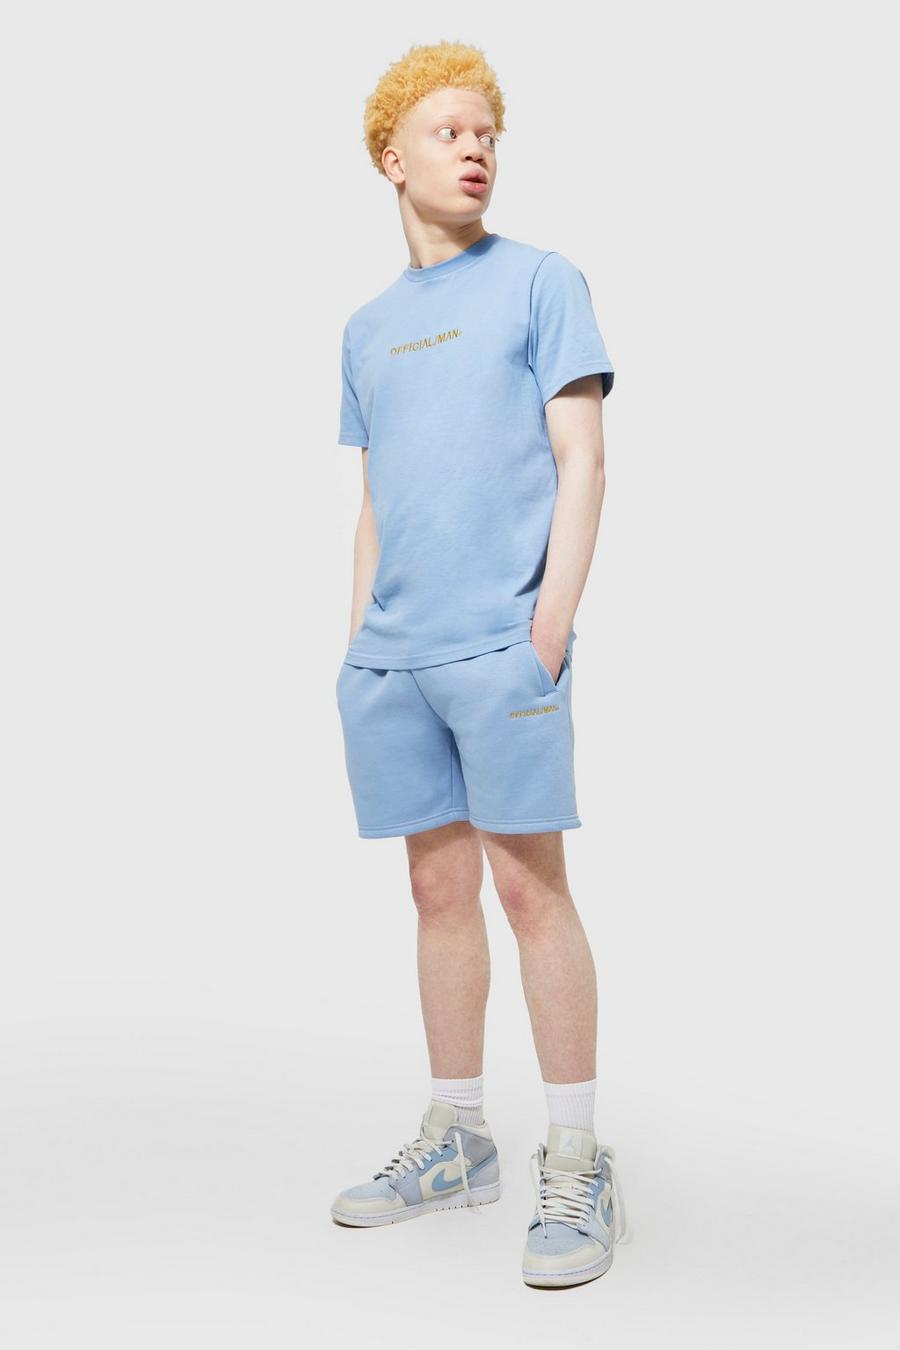 Conjunto MAN Official ajustado de pantalón corto y camiseta, Light blue azzurro